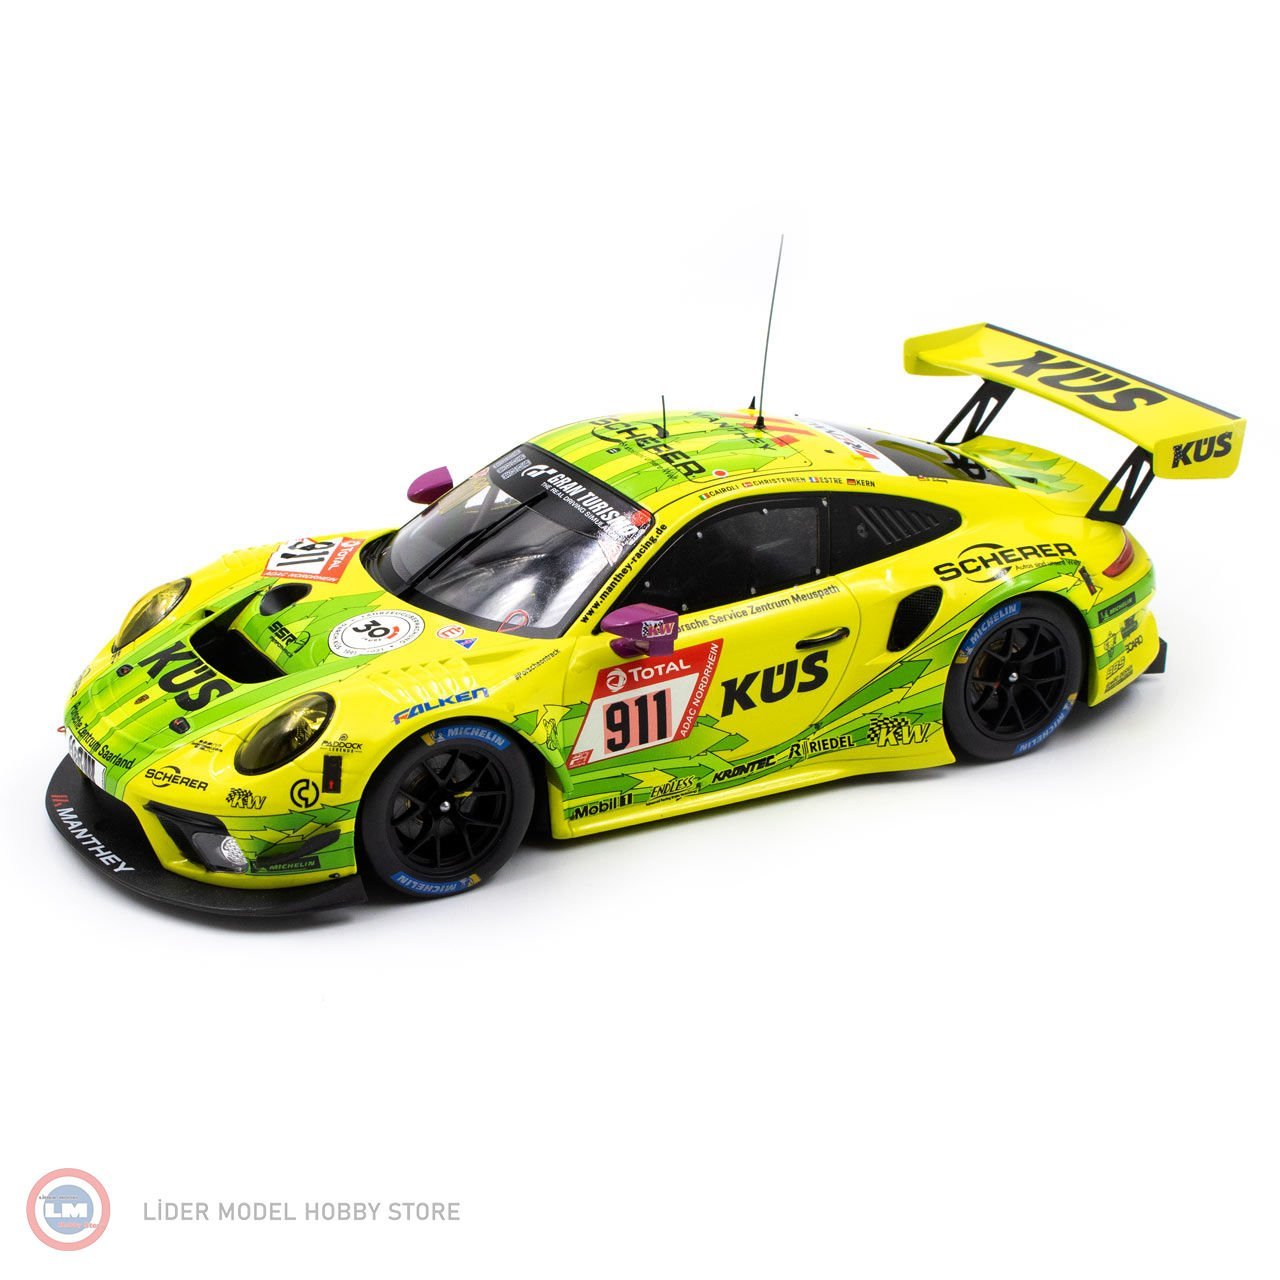 1:18 2021 Porsche 911 GT3 R #911  - 2021 Sieger 24h Rennen Nürburgring Manthey Collection